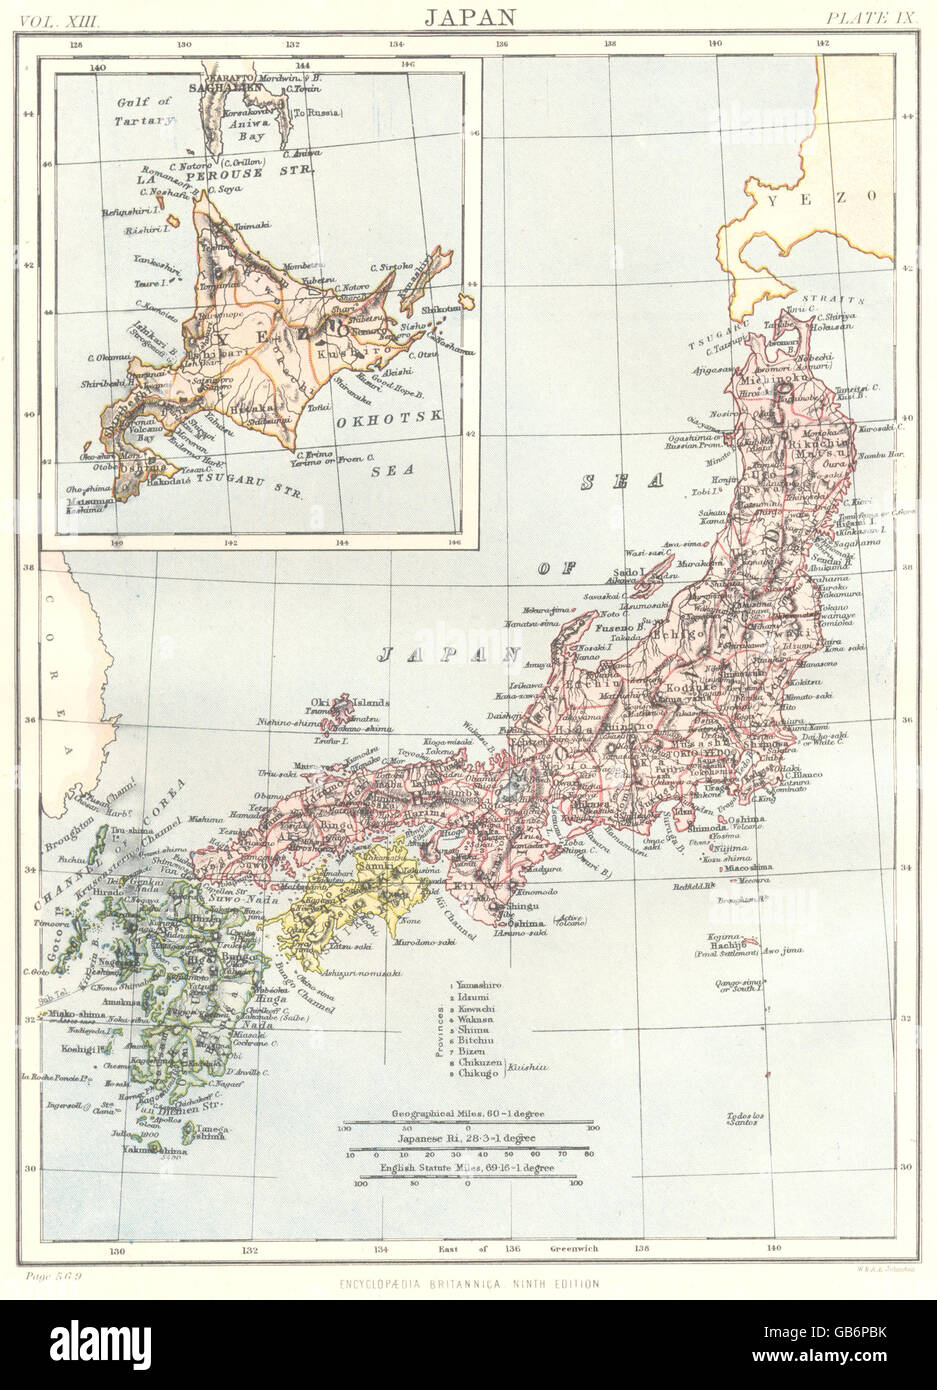 JAPAN: Showing provinces. Inset map of Yezo Okhotsk Sea. Britannica, 1898 Stock Photo